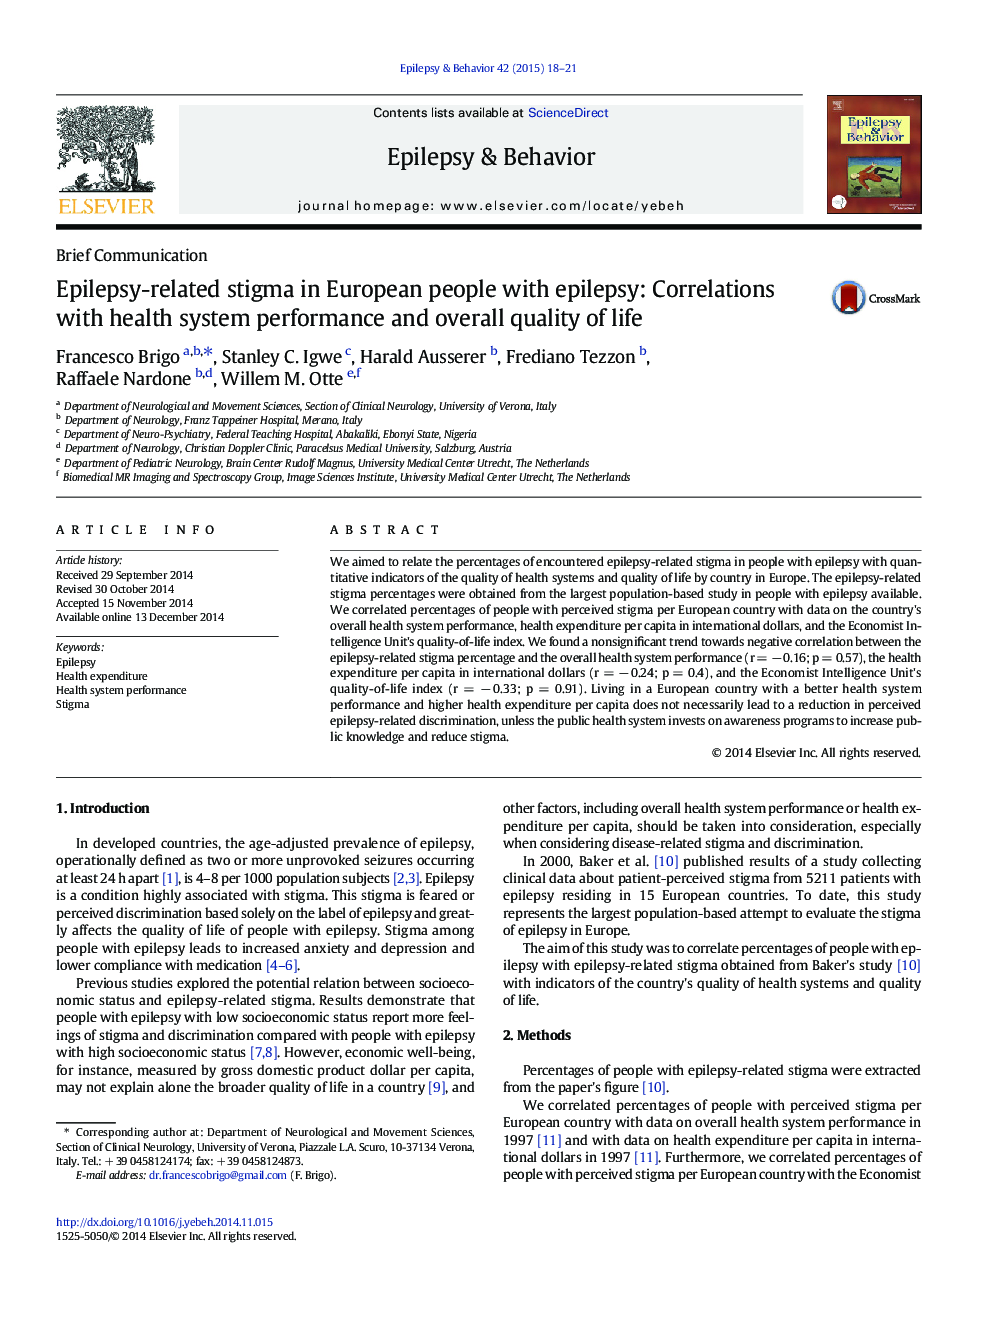 آلودگی مرتبط با صرع در افراد اروپایی با صرع: همبستگی با عملکرد سیستم بهداشتی و کیفیت کلی زندگی 